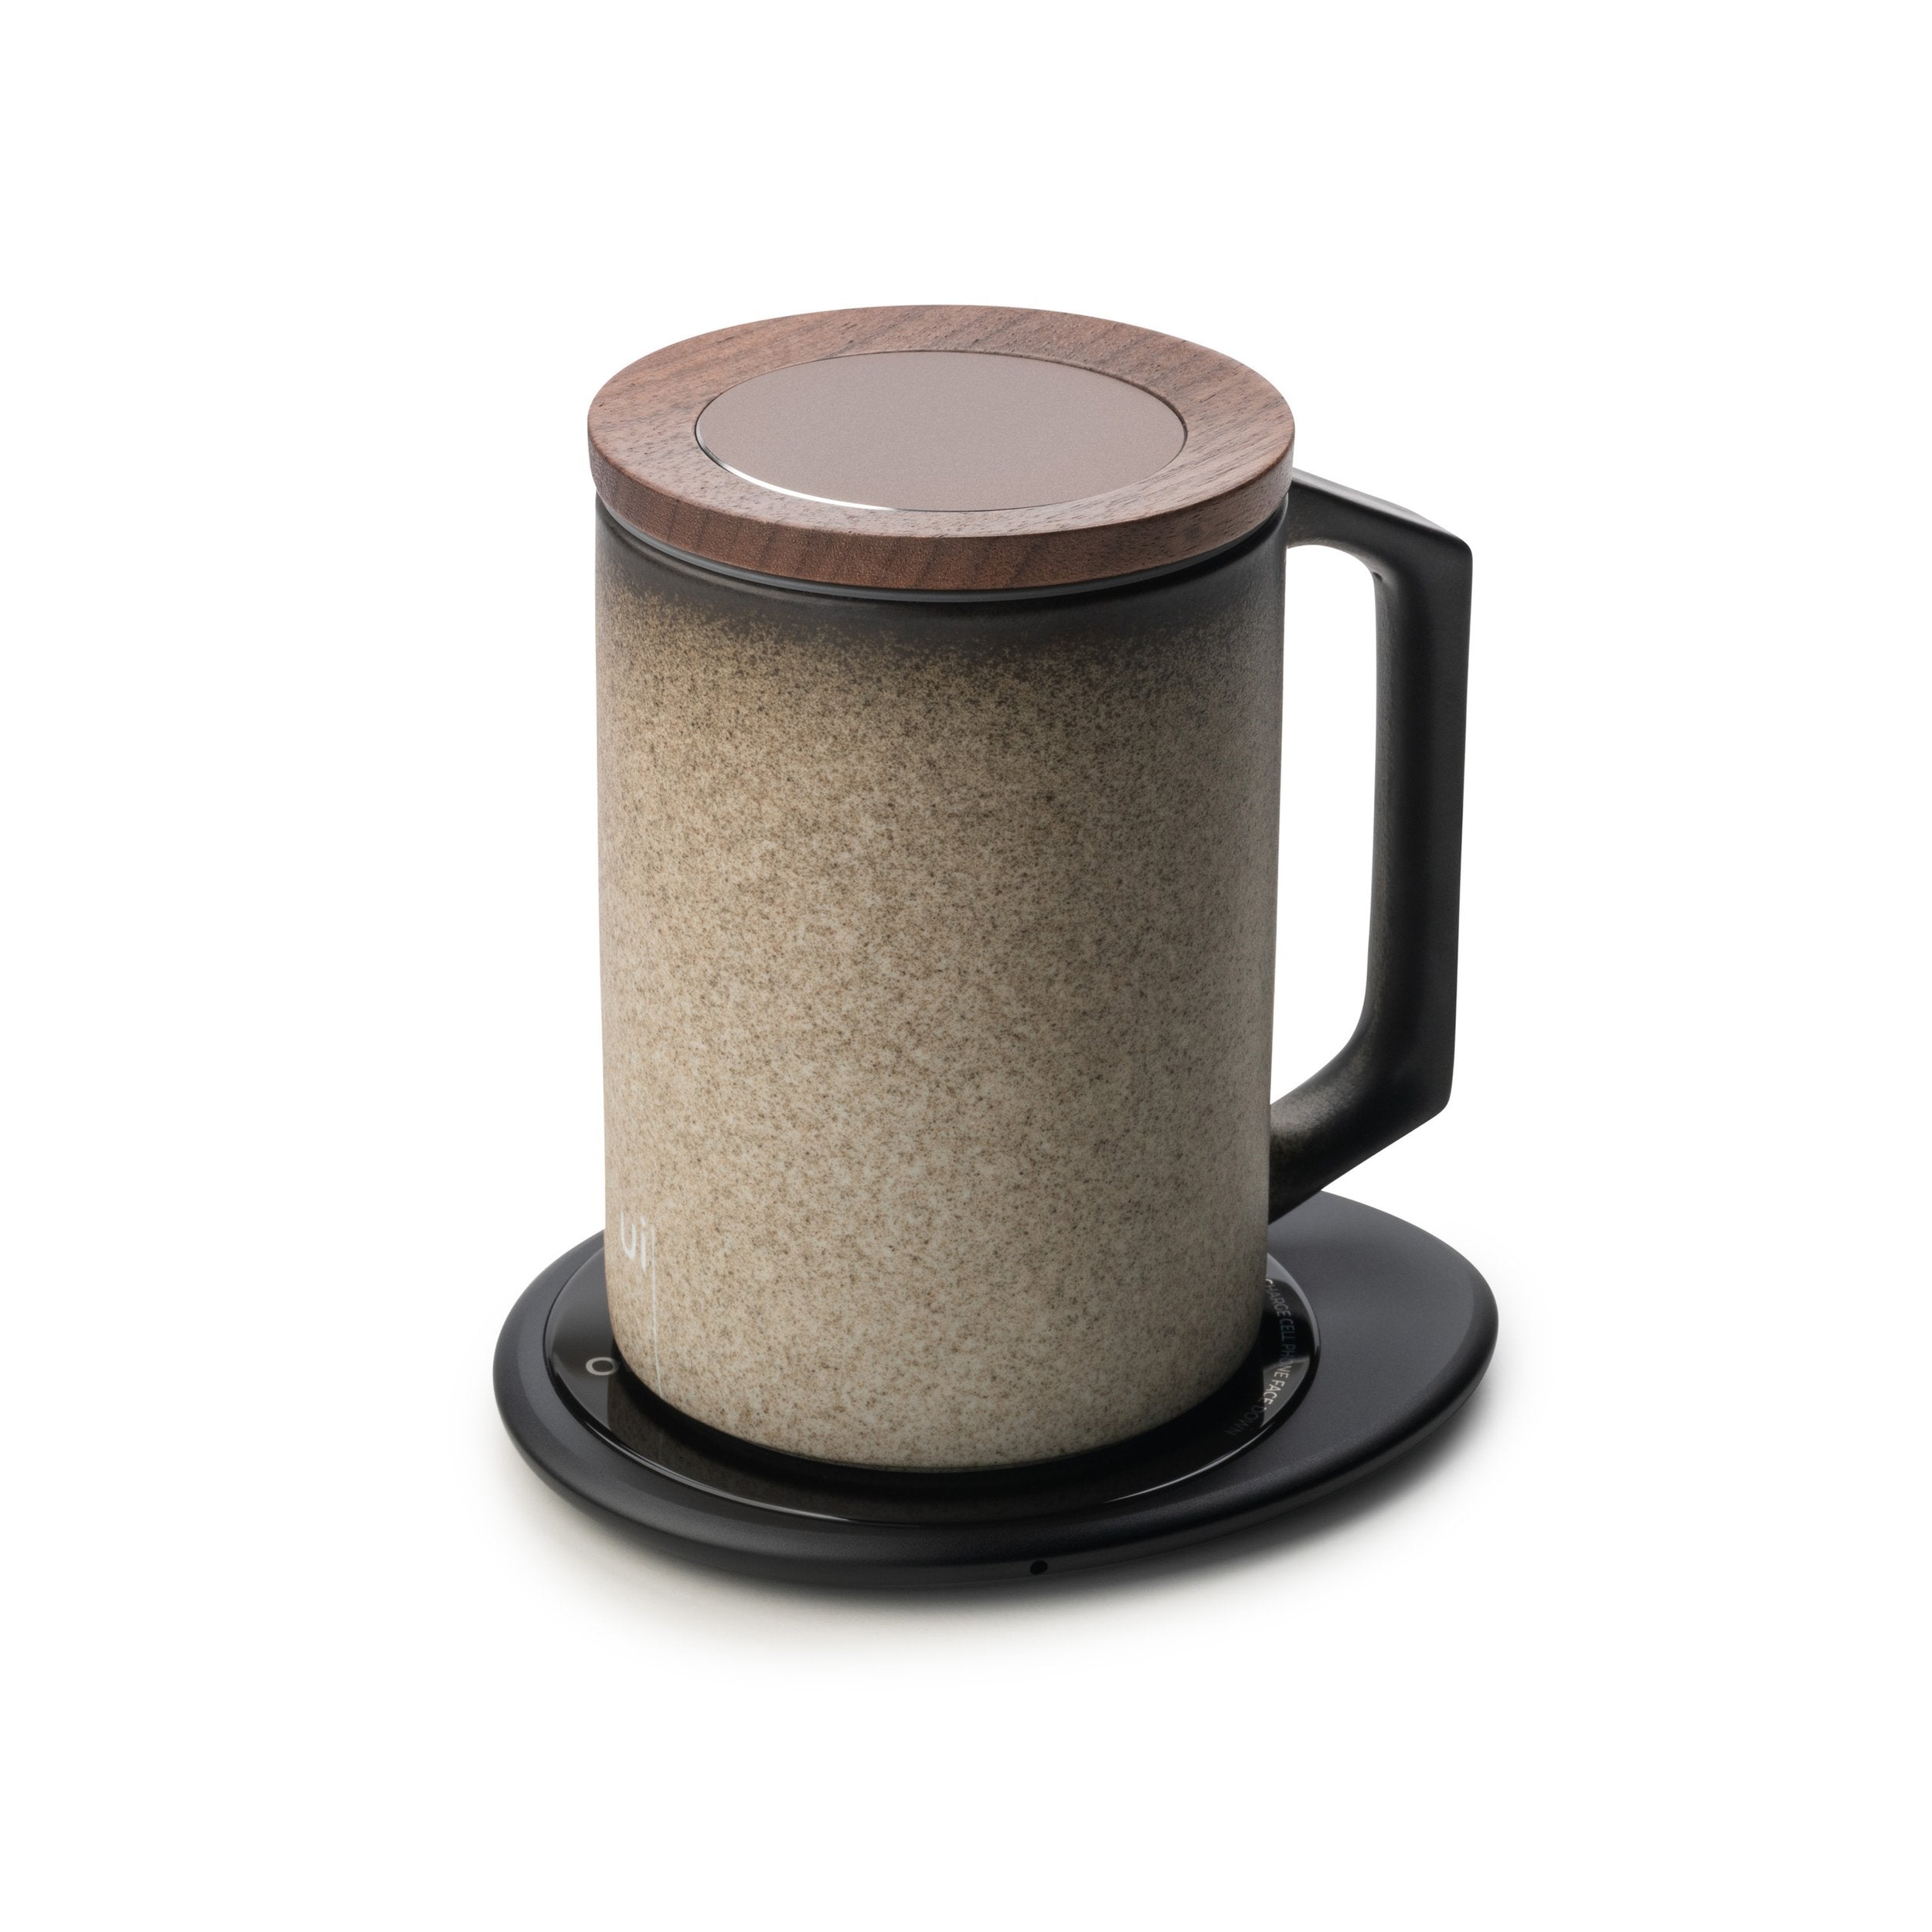 Stone textured mug with lid on black pebble heating pad